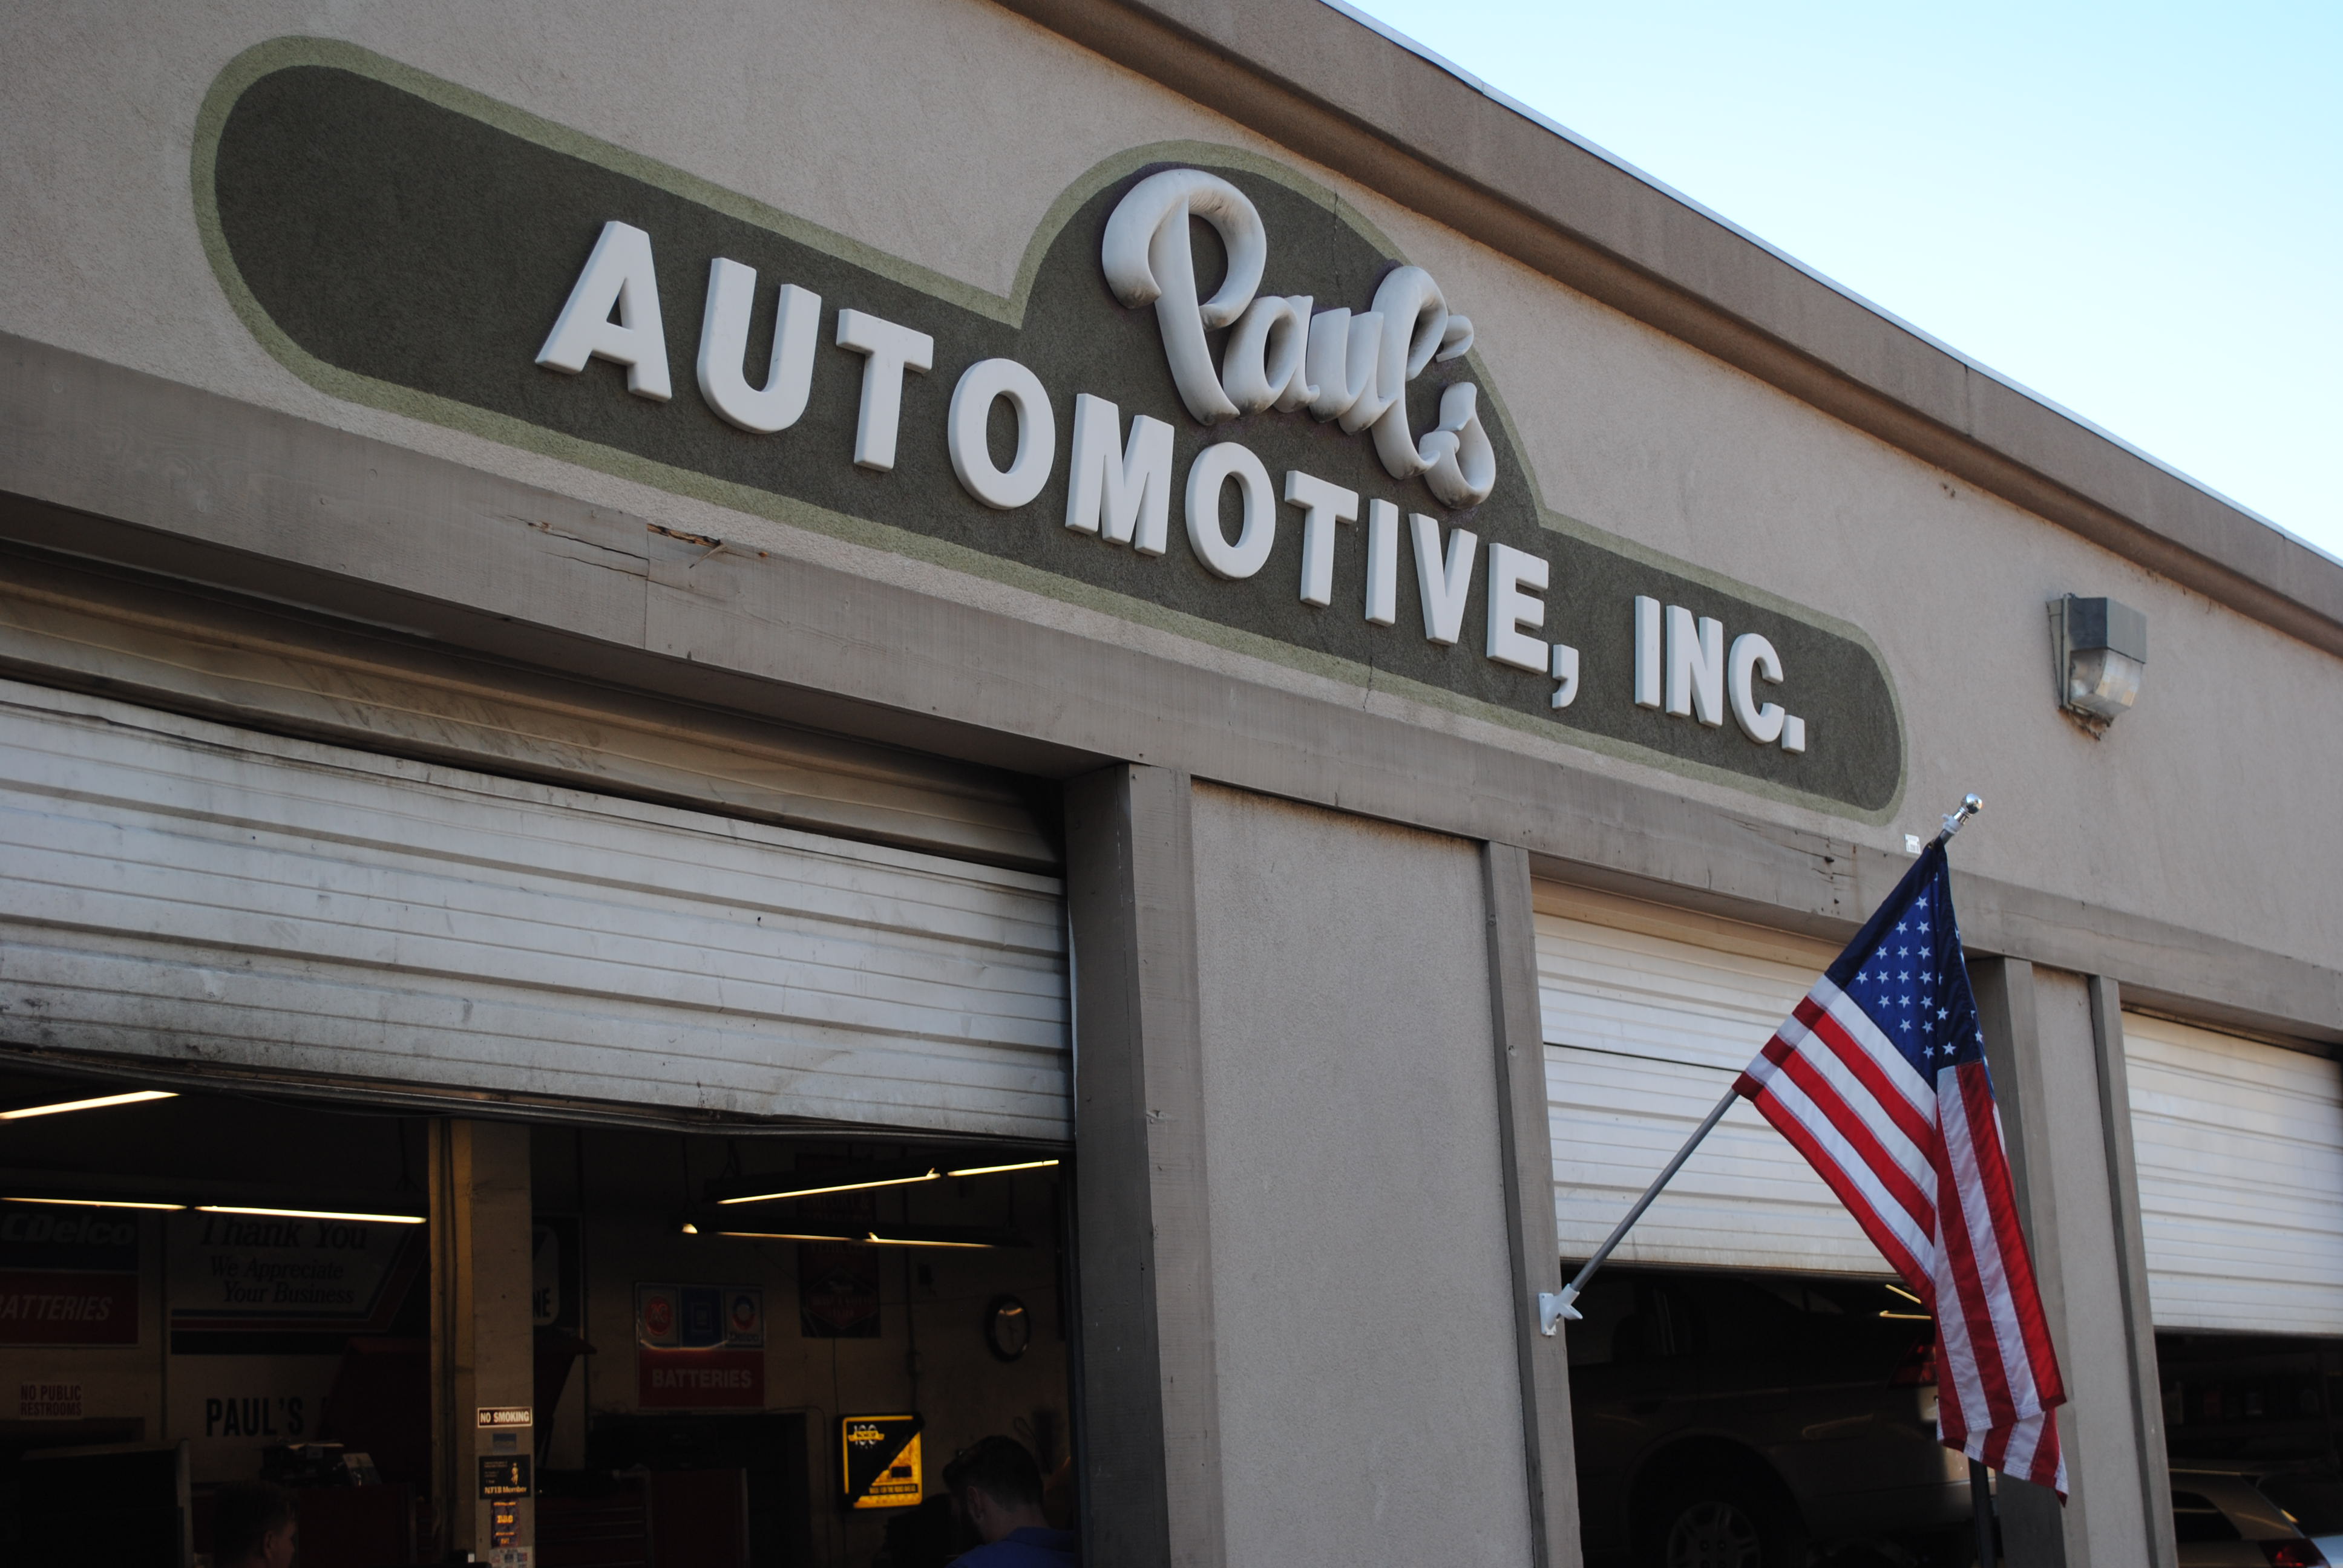 Paul's Automotive Repair Shop - Photo